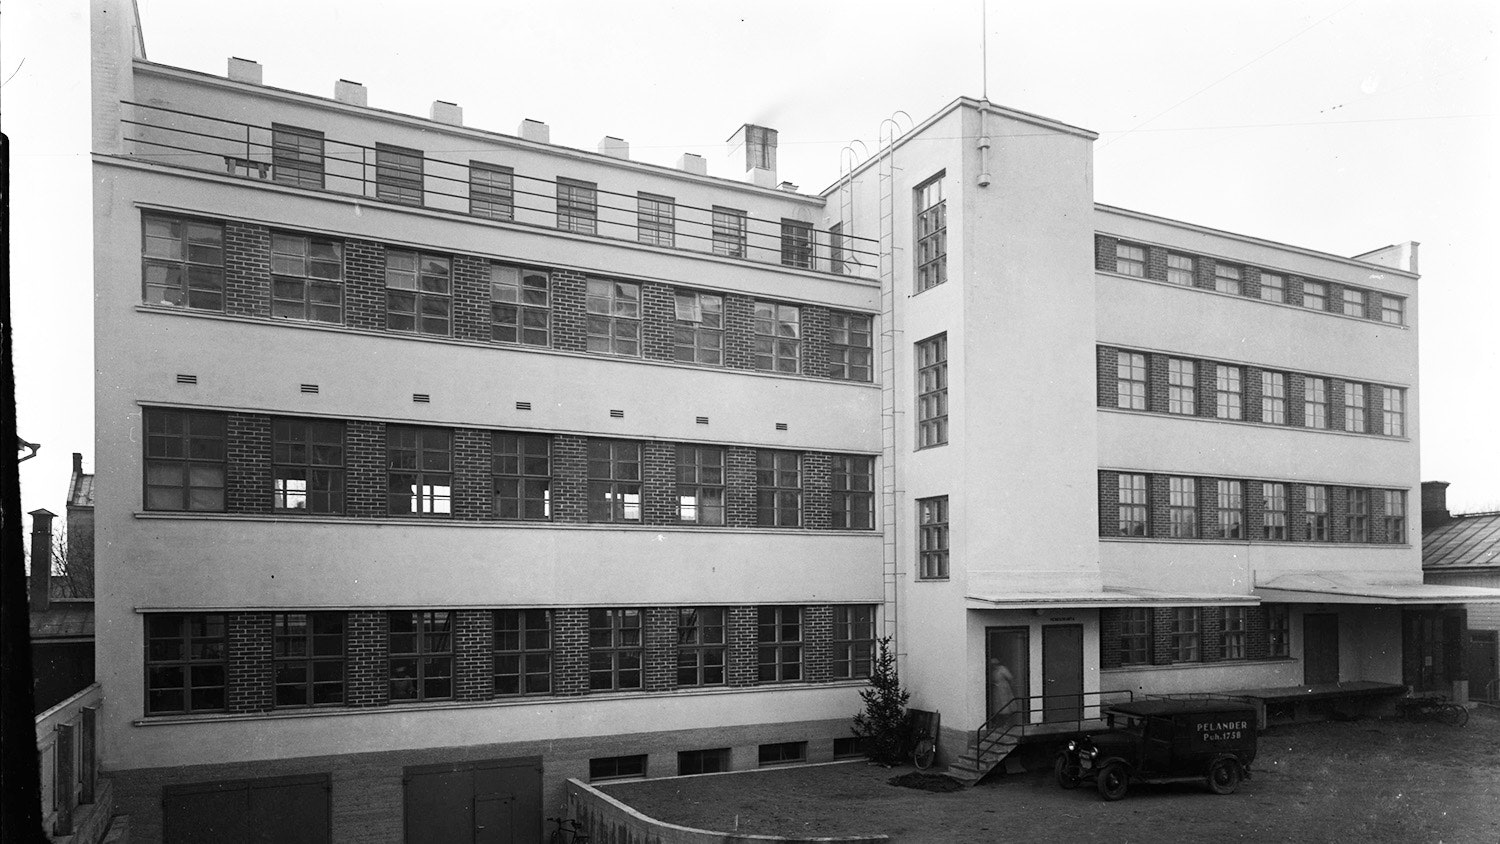 Museokeskuksen kuvassa Rauhankatu 14b sisäpihan rakennus Sereksen makeistehtaana.